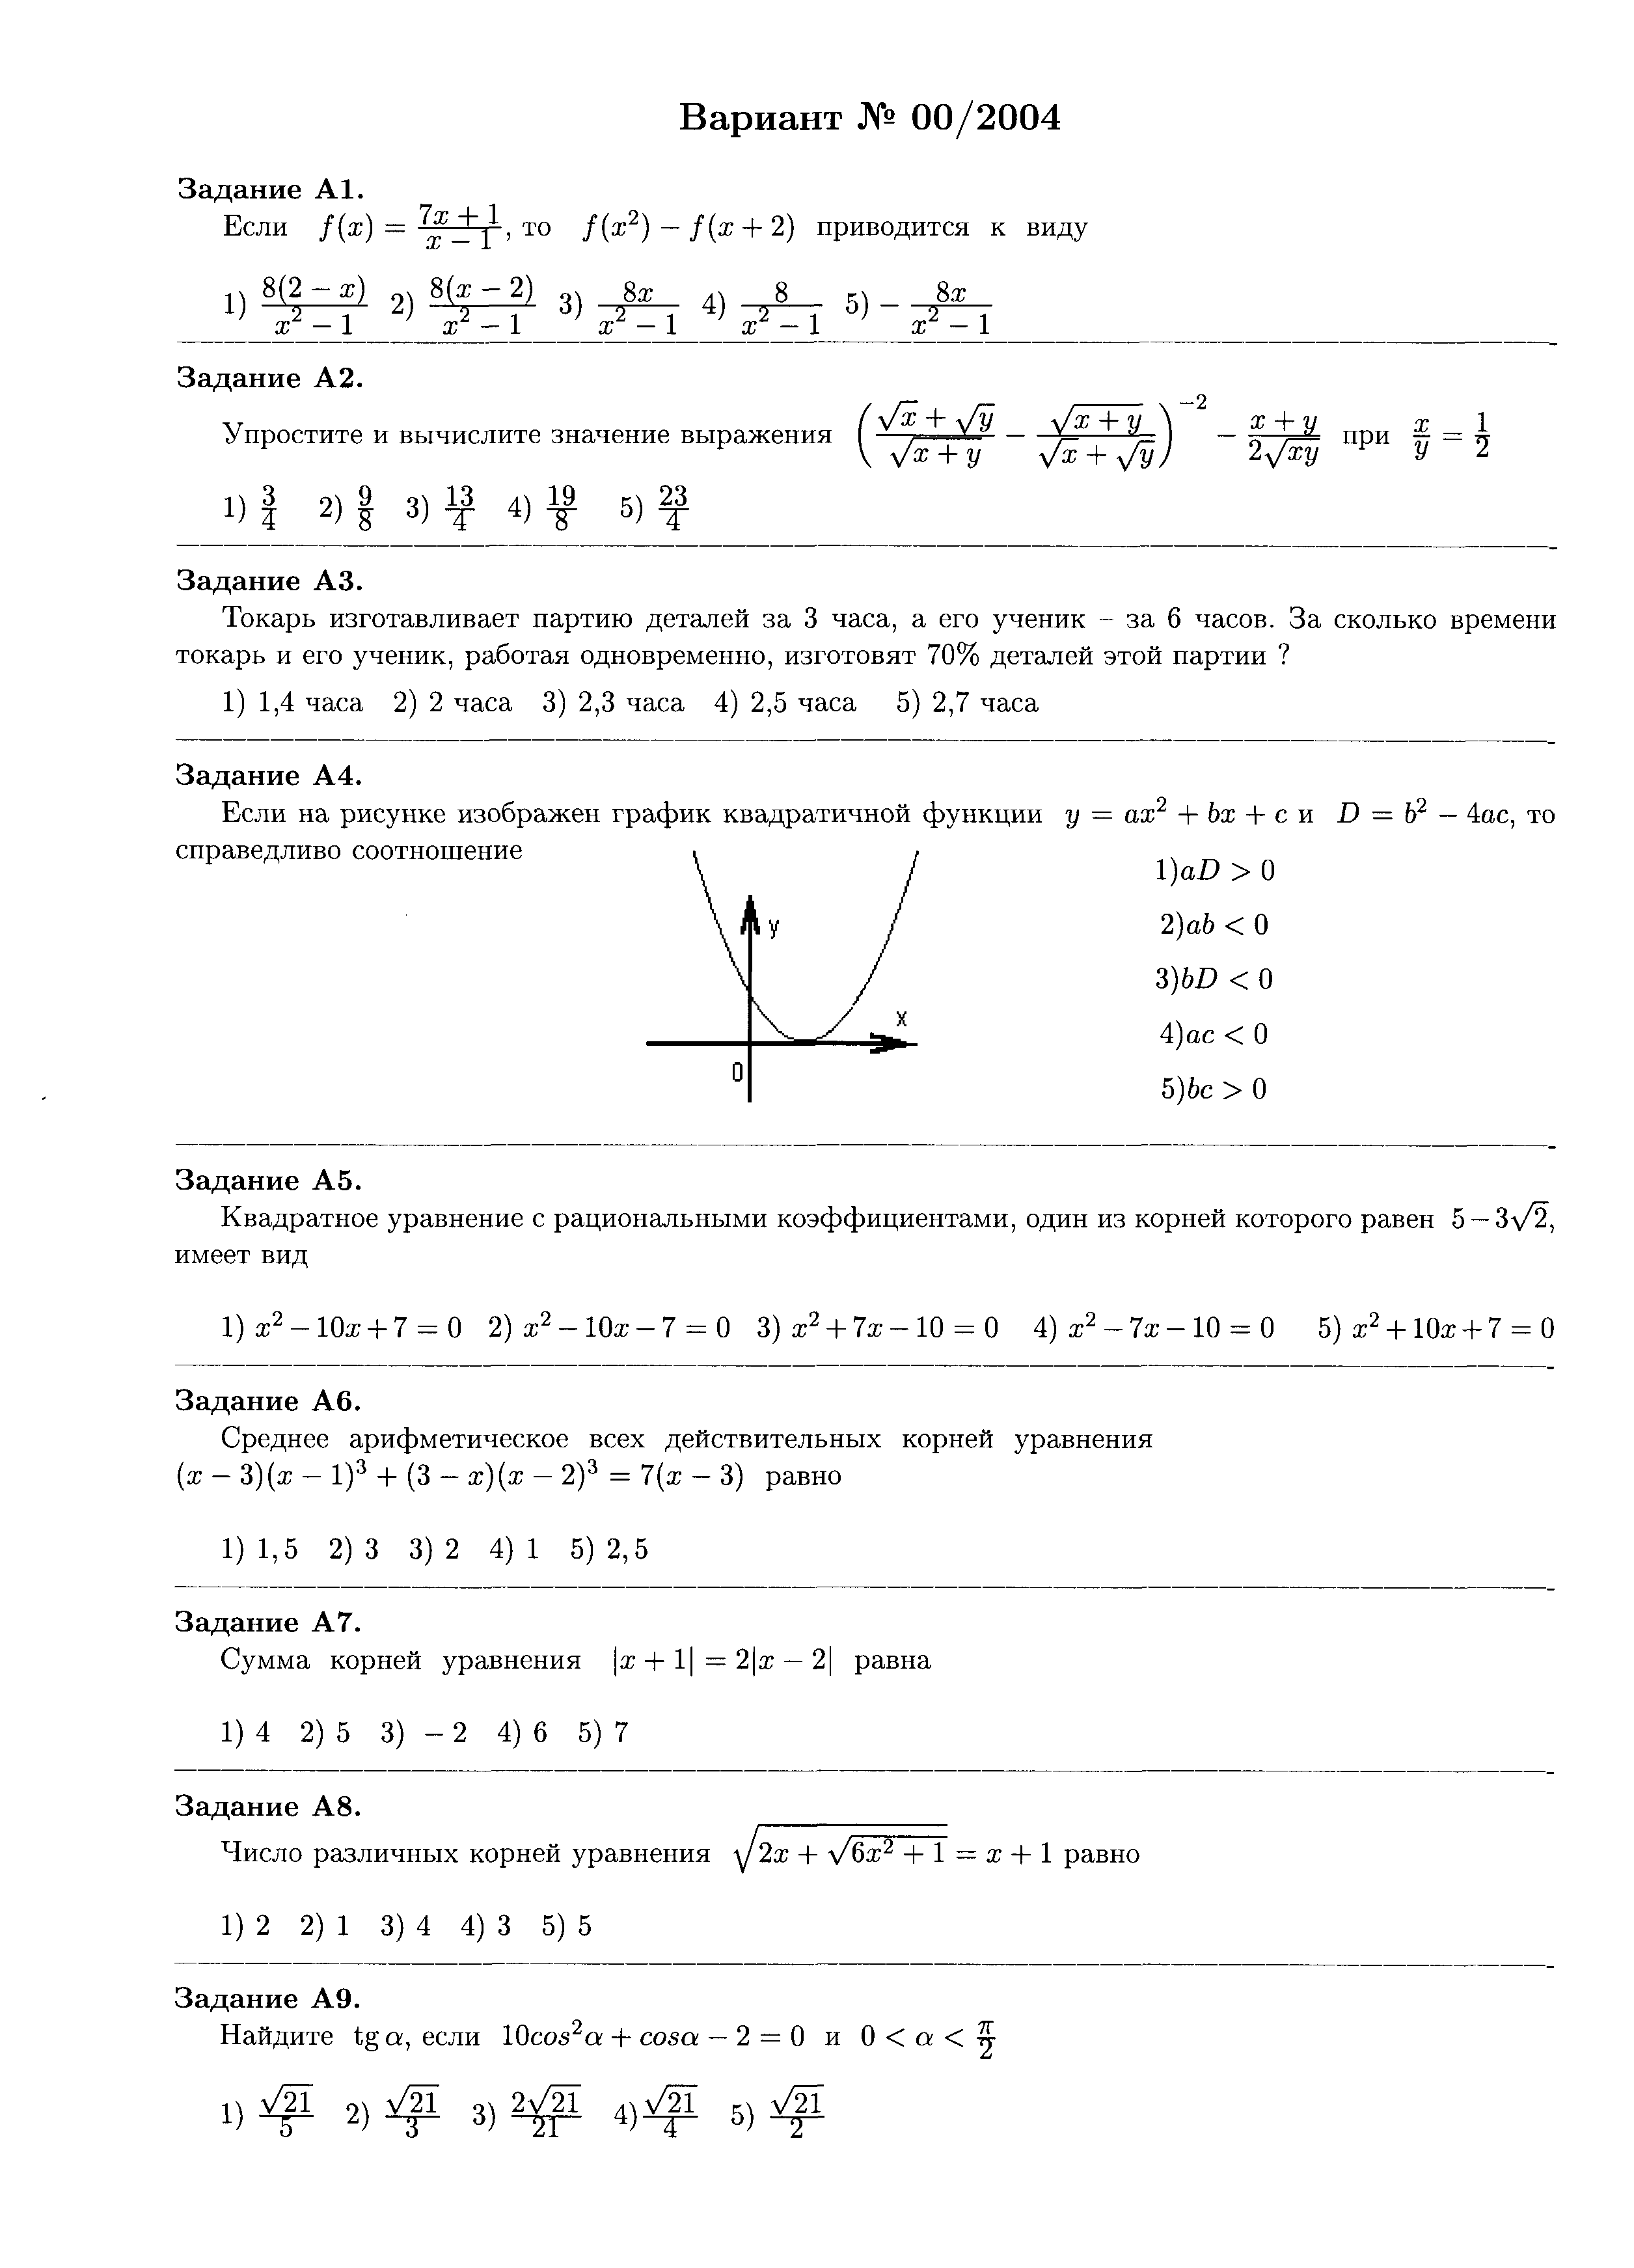 Исследование корней уравнения(задание на лето 10 кл)